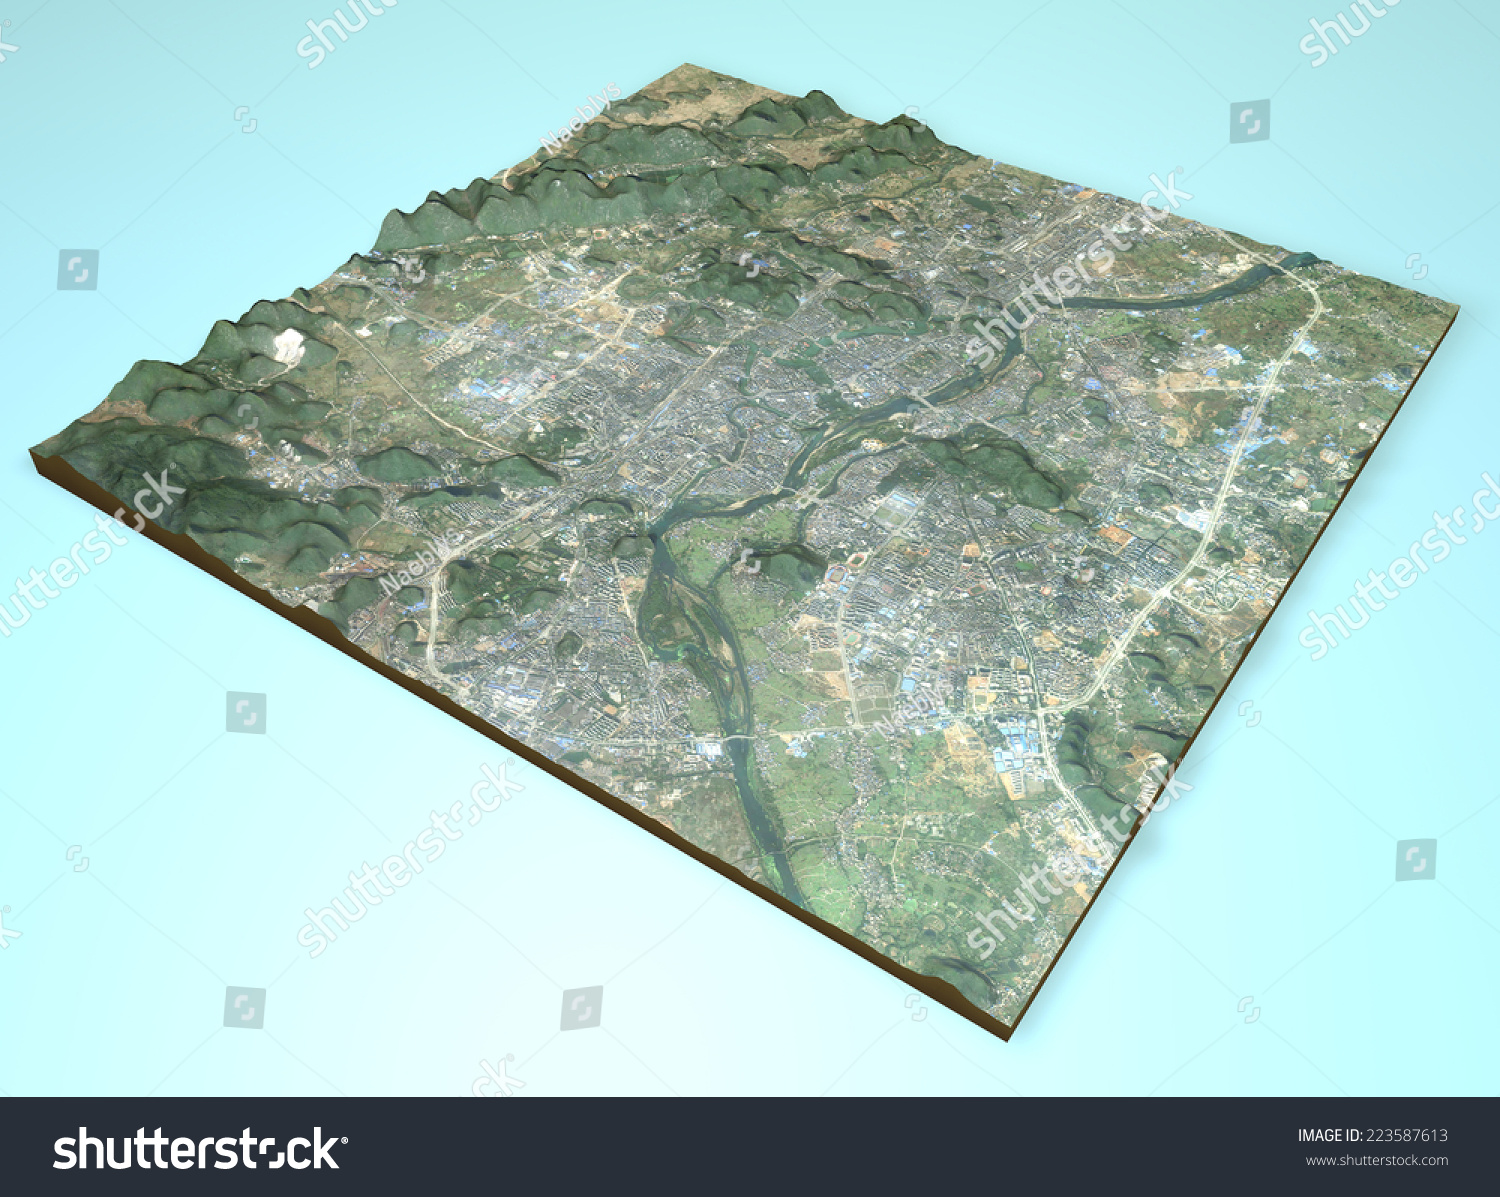 中国卫星视图的城市桂林,地图,3 d部分。这张图